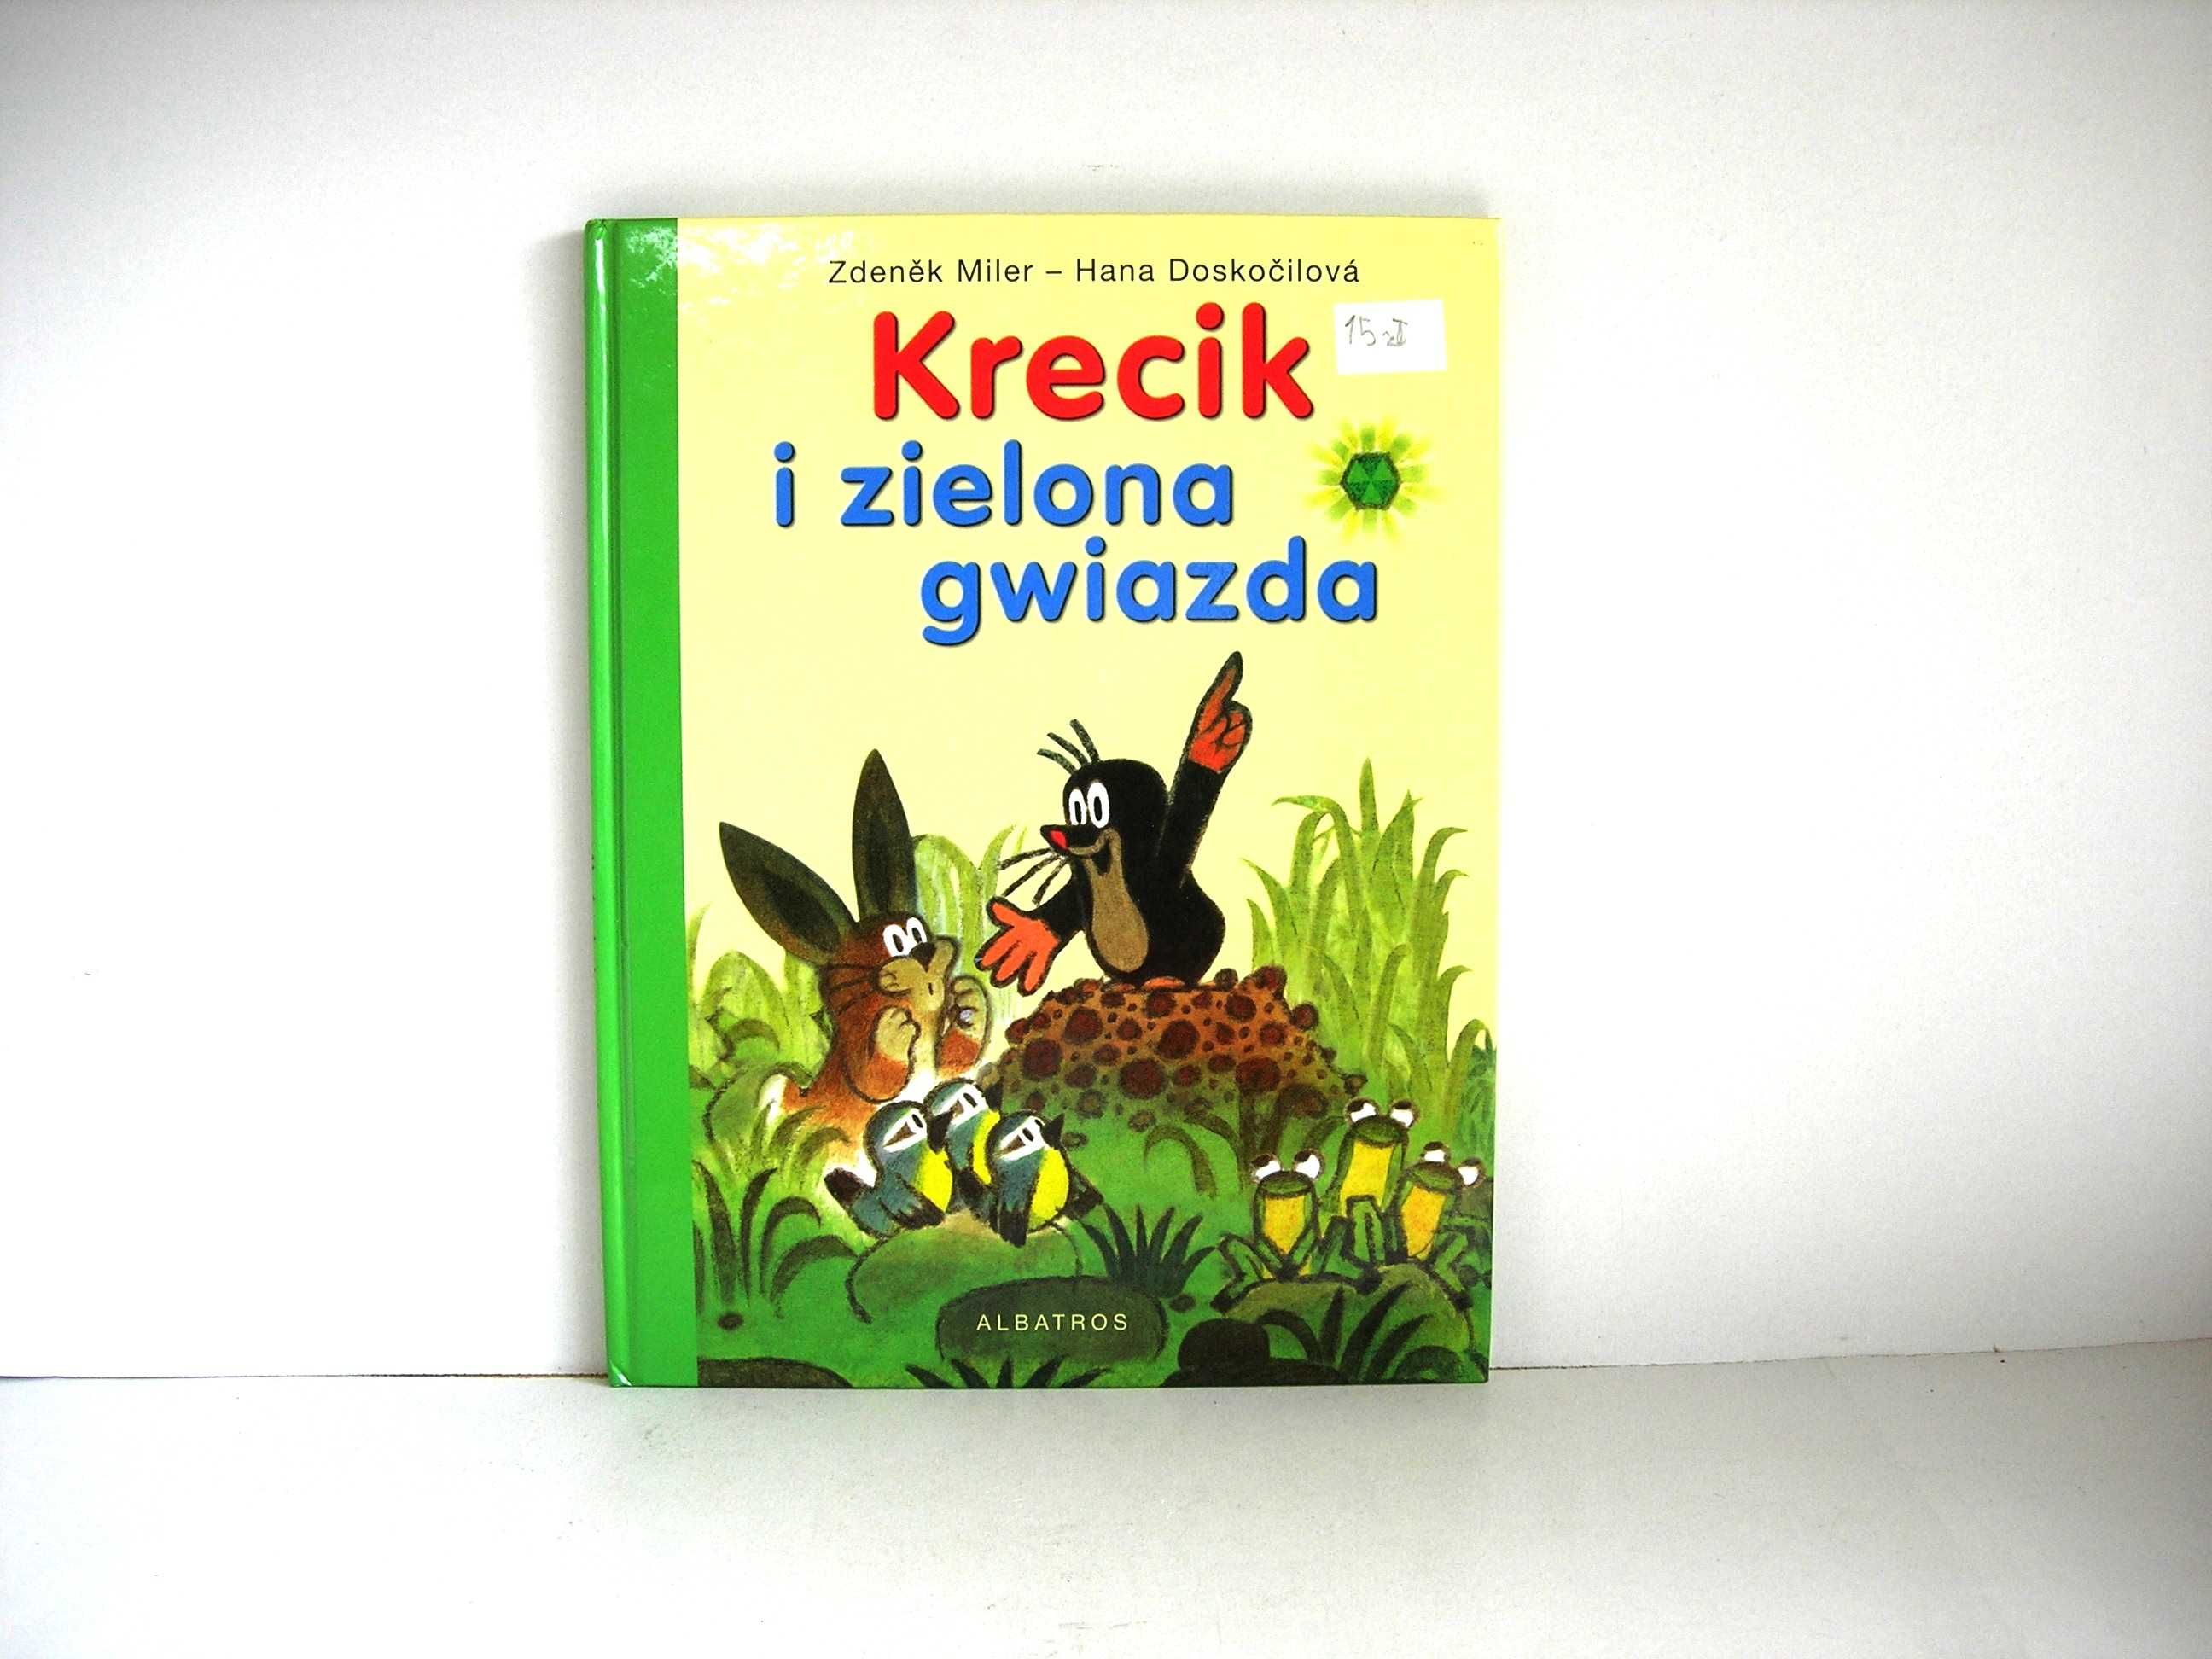 "Krecik i zielona gwiazda" Zdenĕk Miler wyd. Albatros 2008